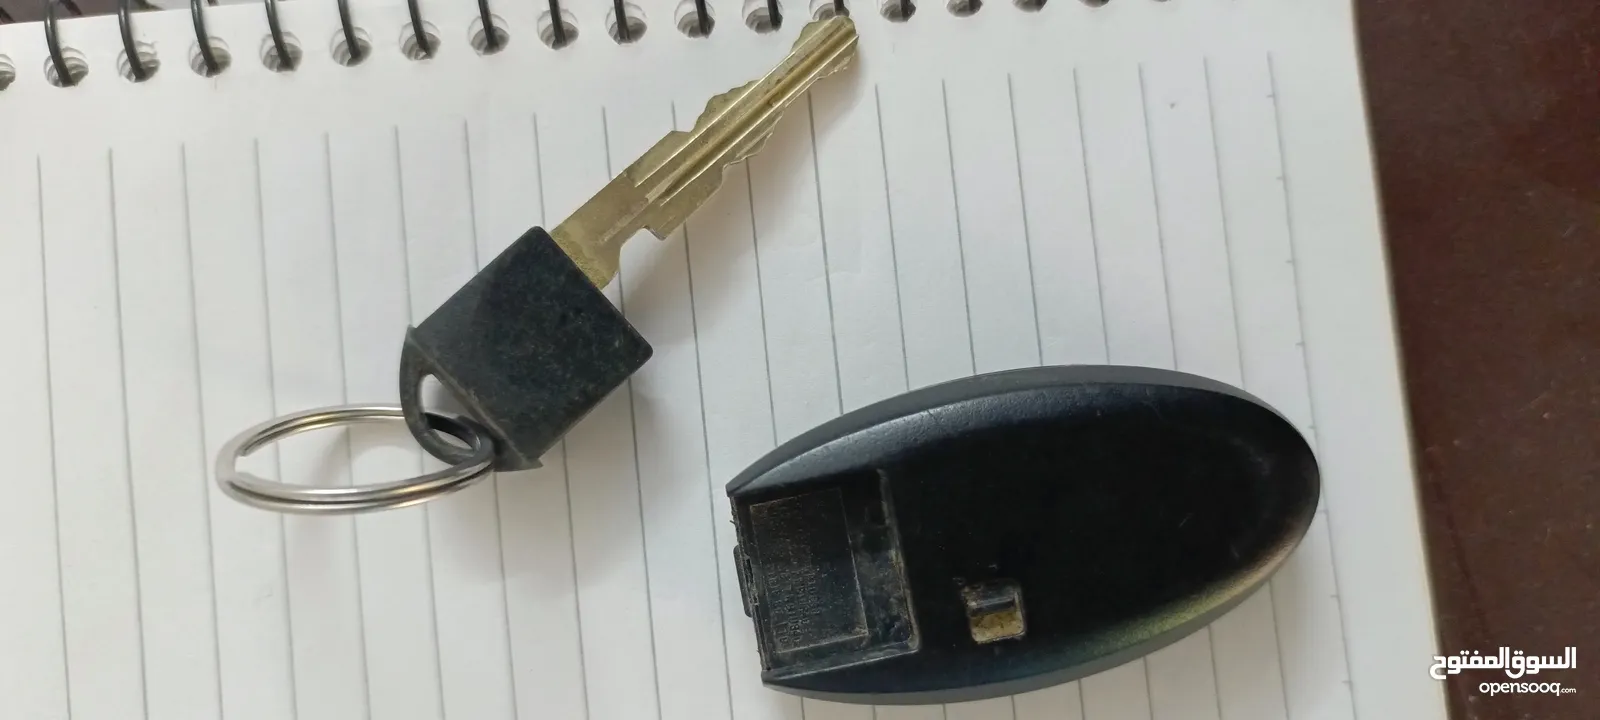 مفتاح نيسان ليف مستعمل للبيع